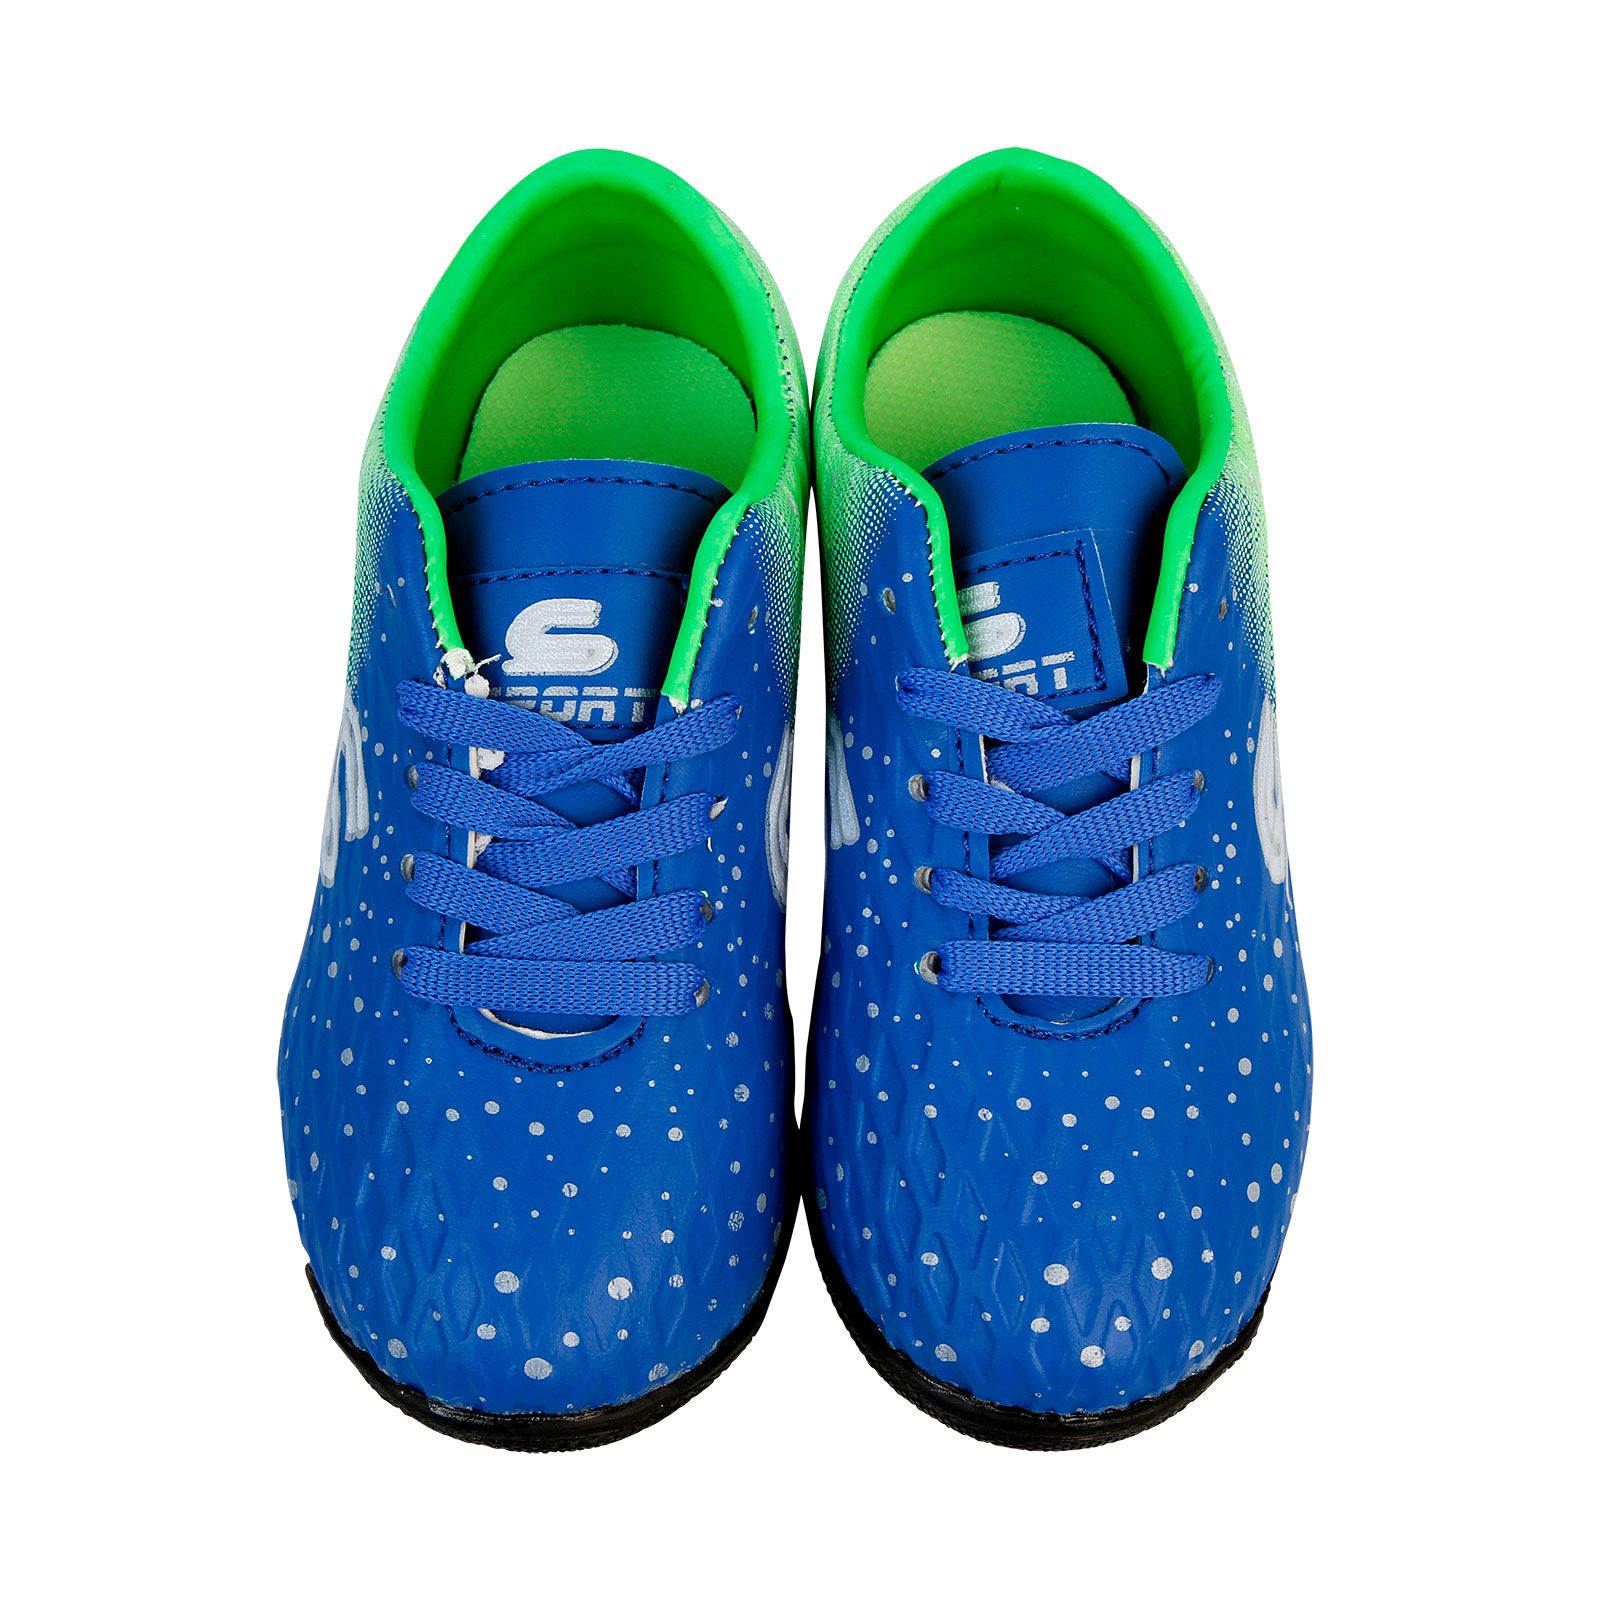 Sport Erkek Çocuk Halı Saha Spor Ayakkabı 26-30 Numara Saks Mavisi Saks Mavisi